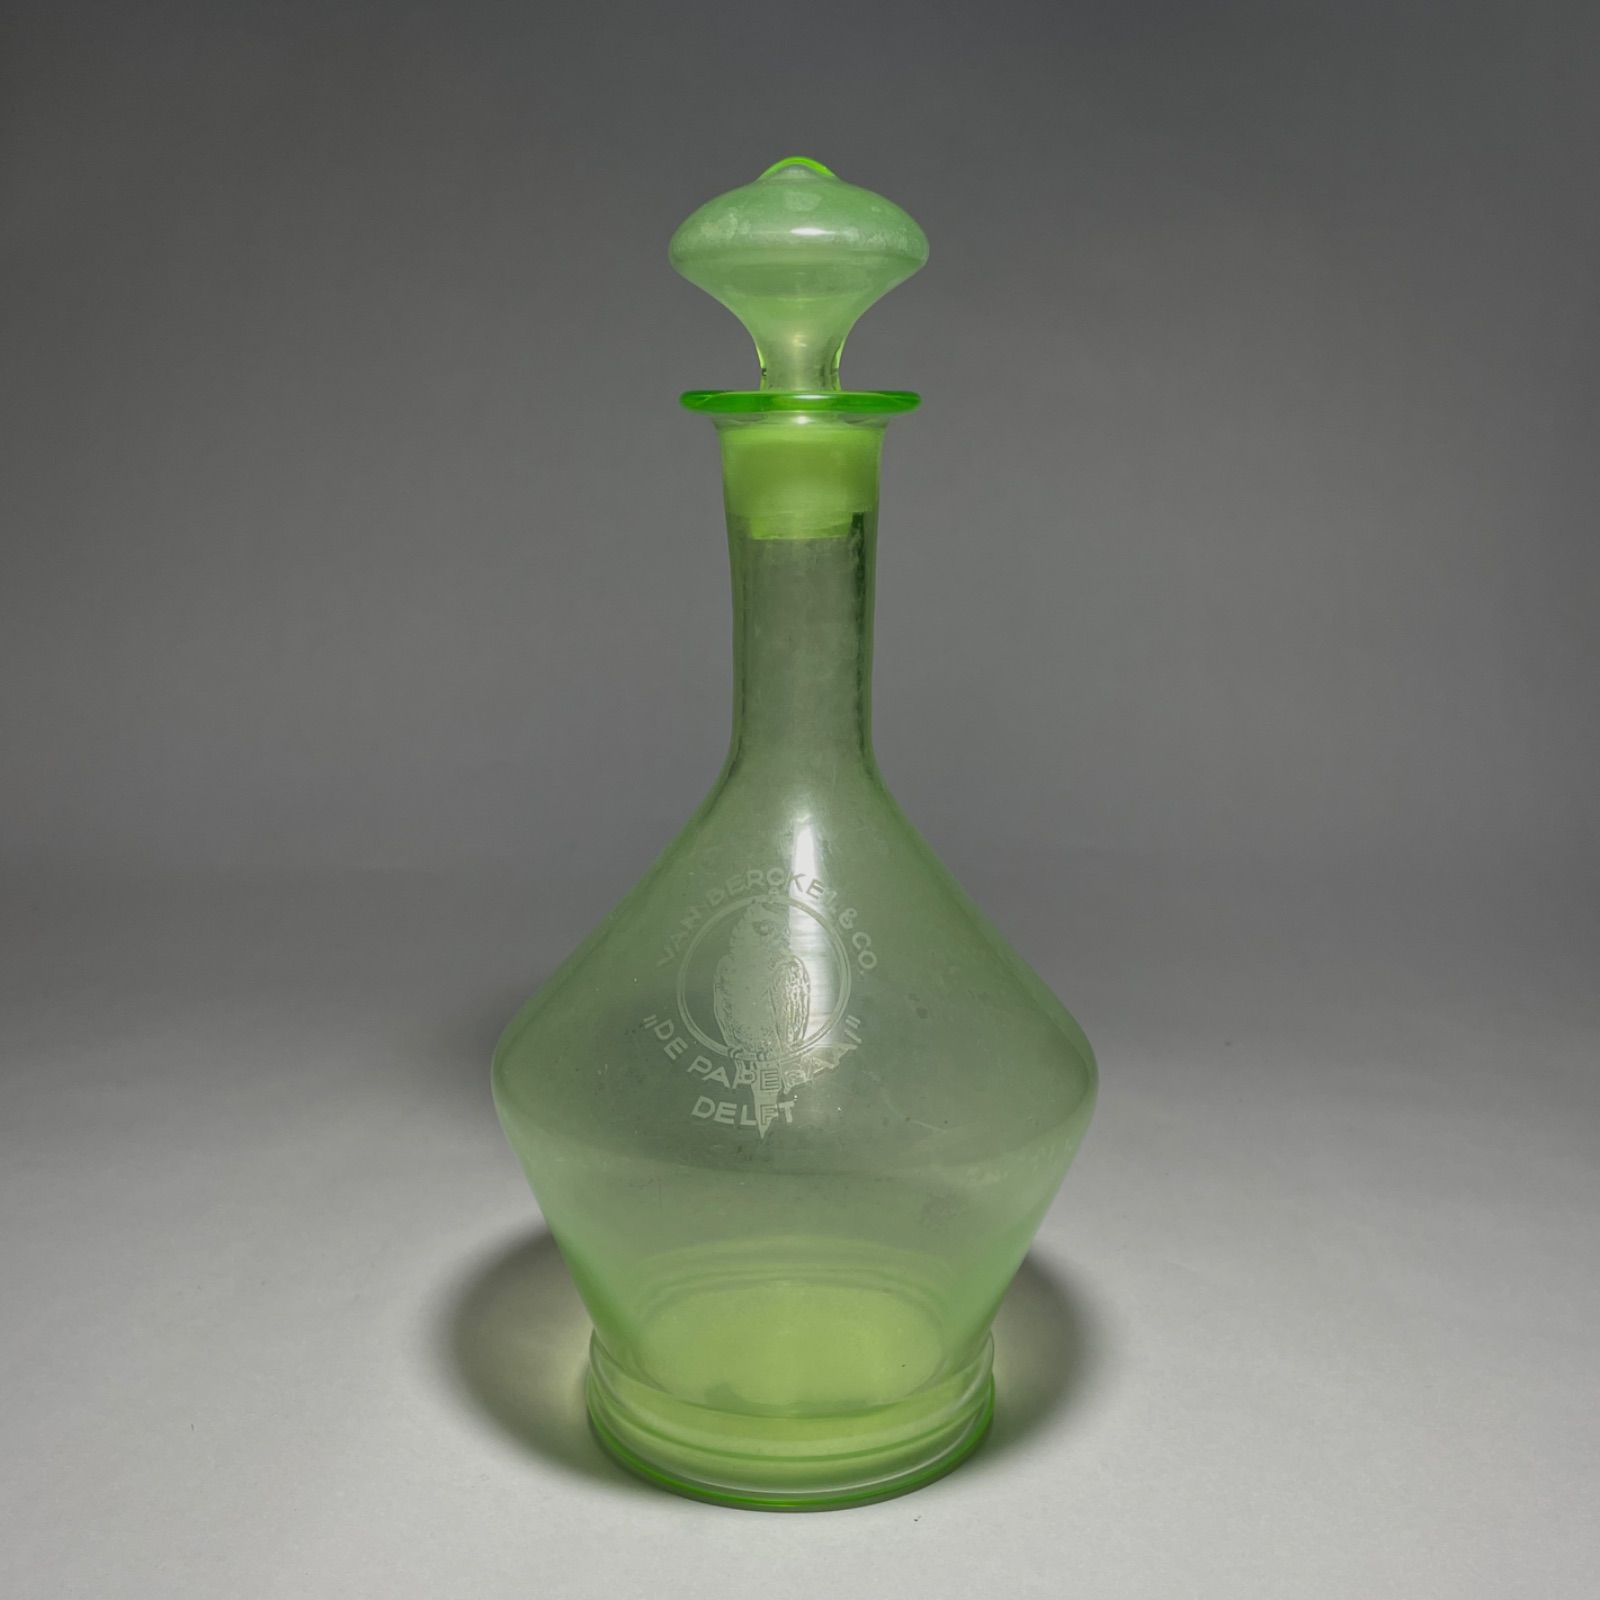 ◇ウランガラス デキャンタ瓶 1900年代初頭 オランダ製 希少品